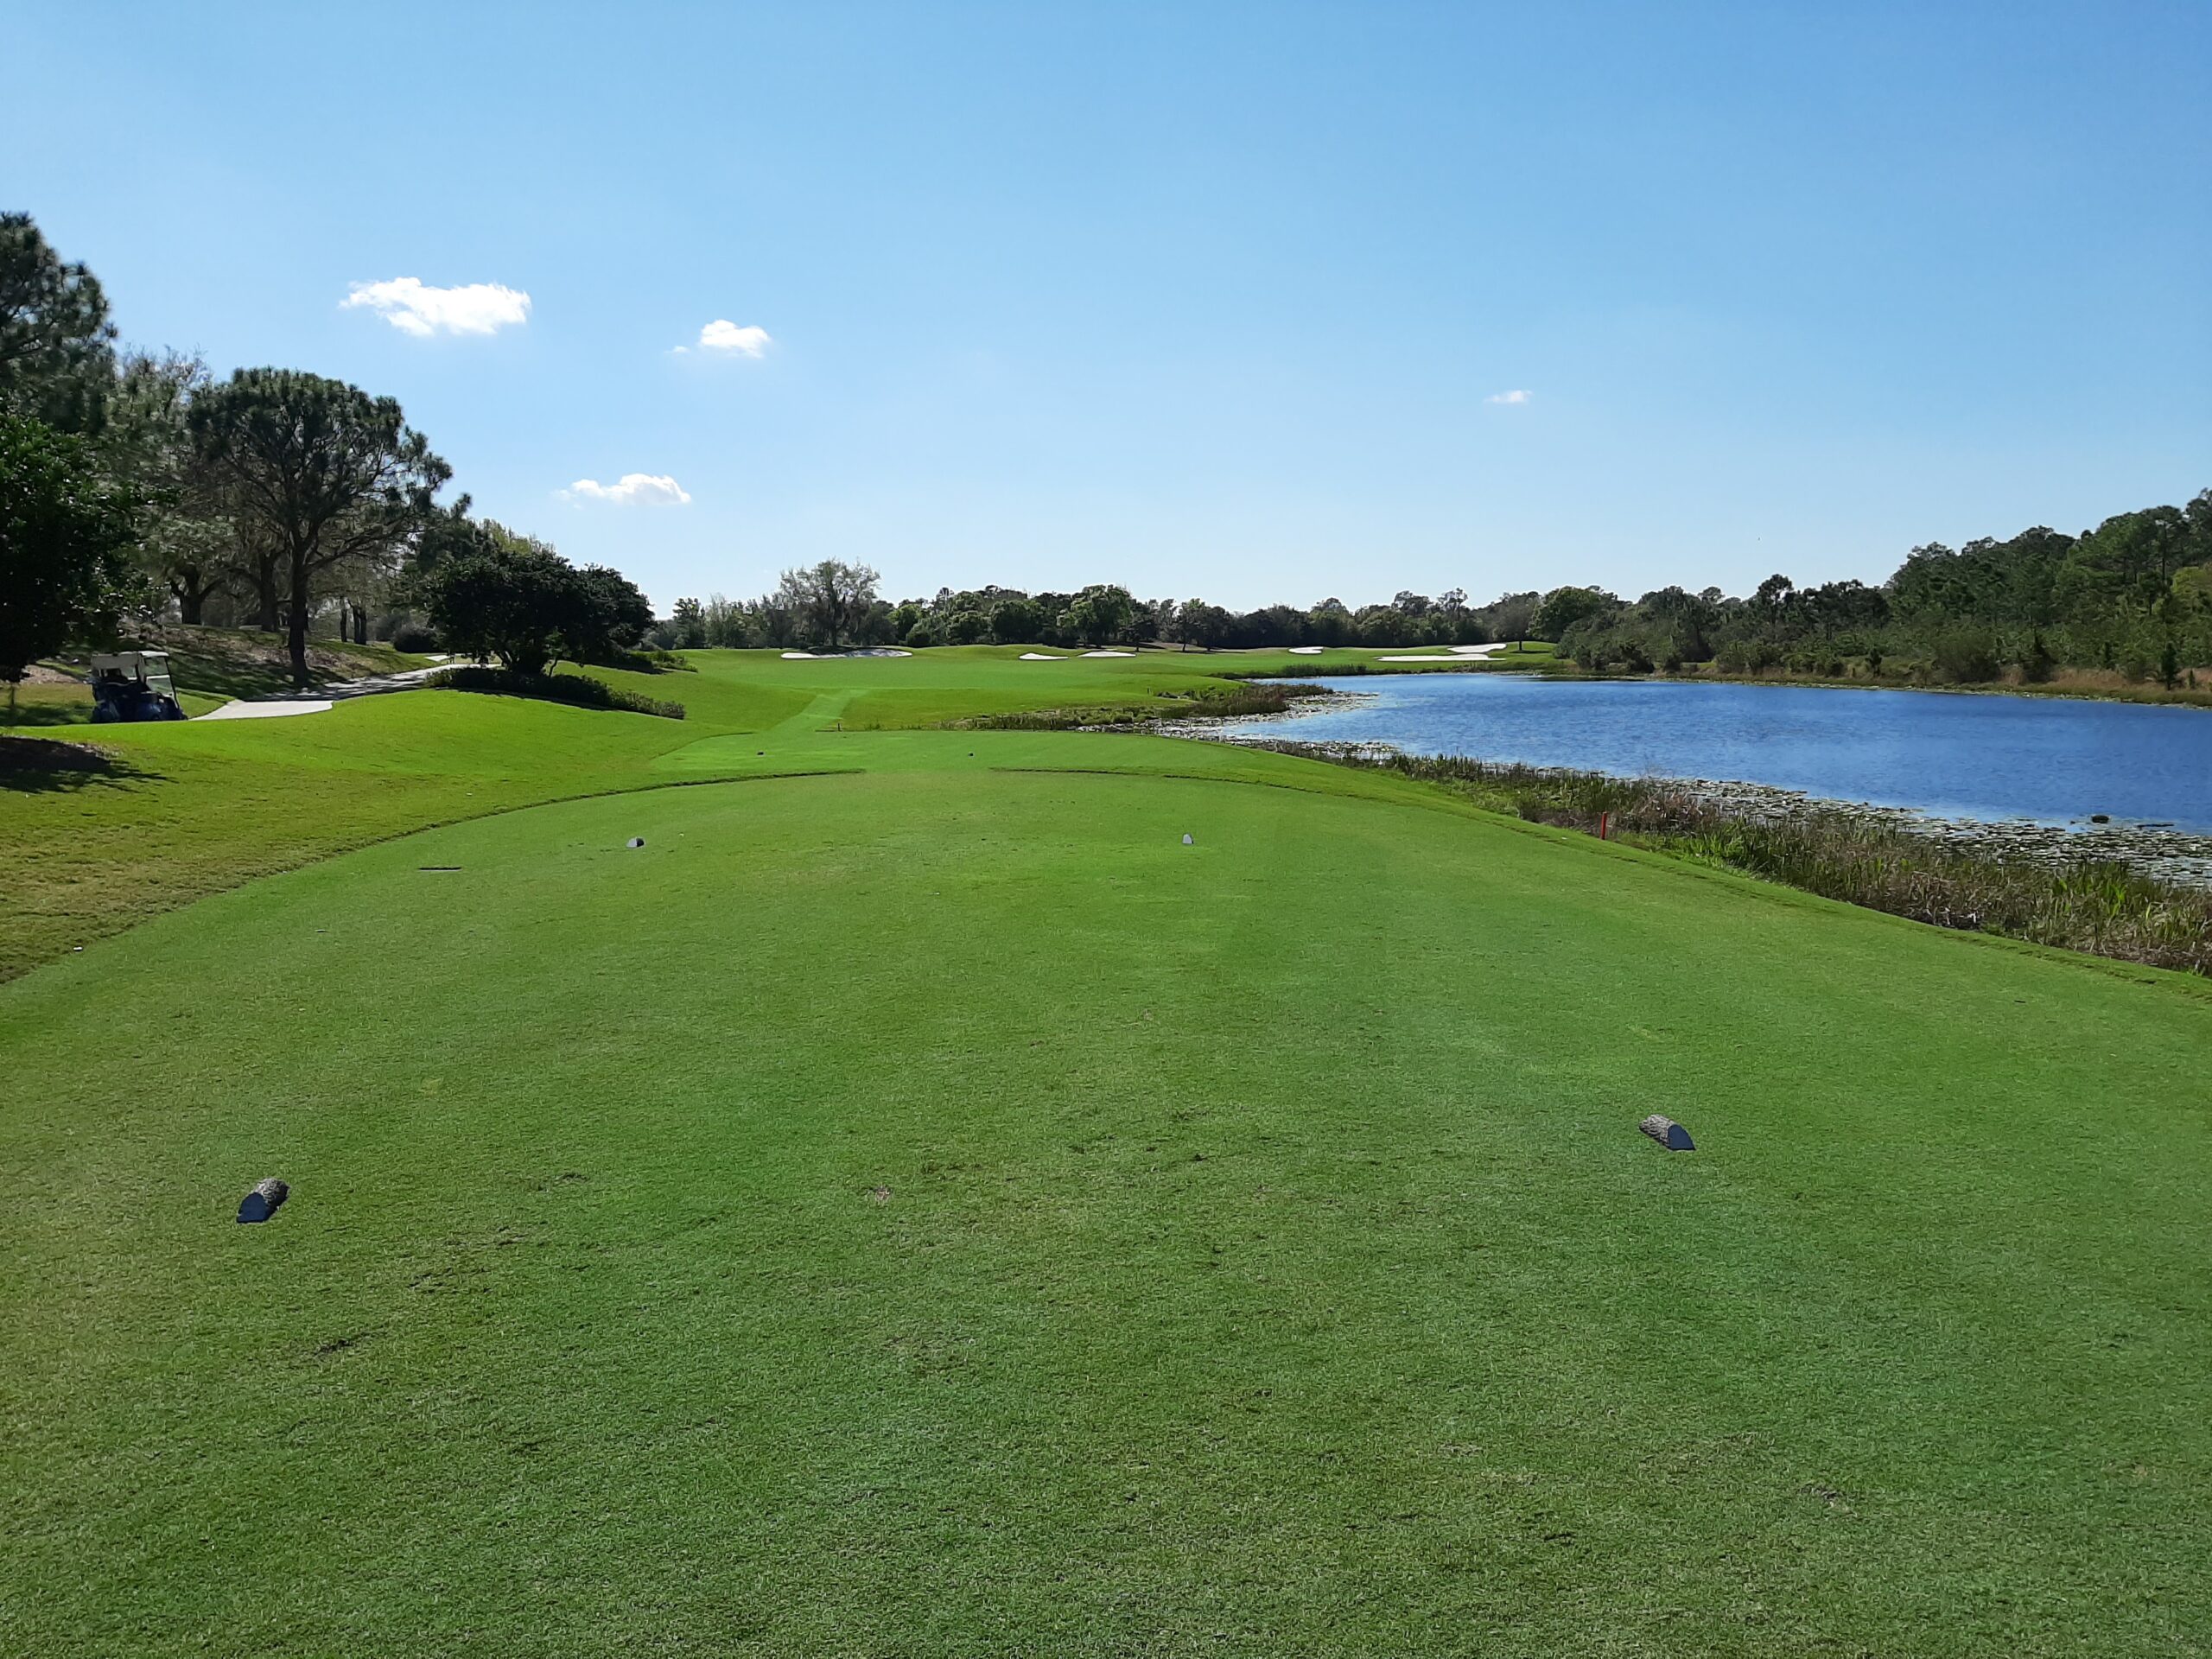 3rd Annual Golf Tournament Update